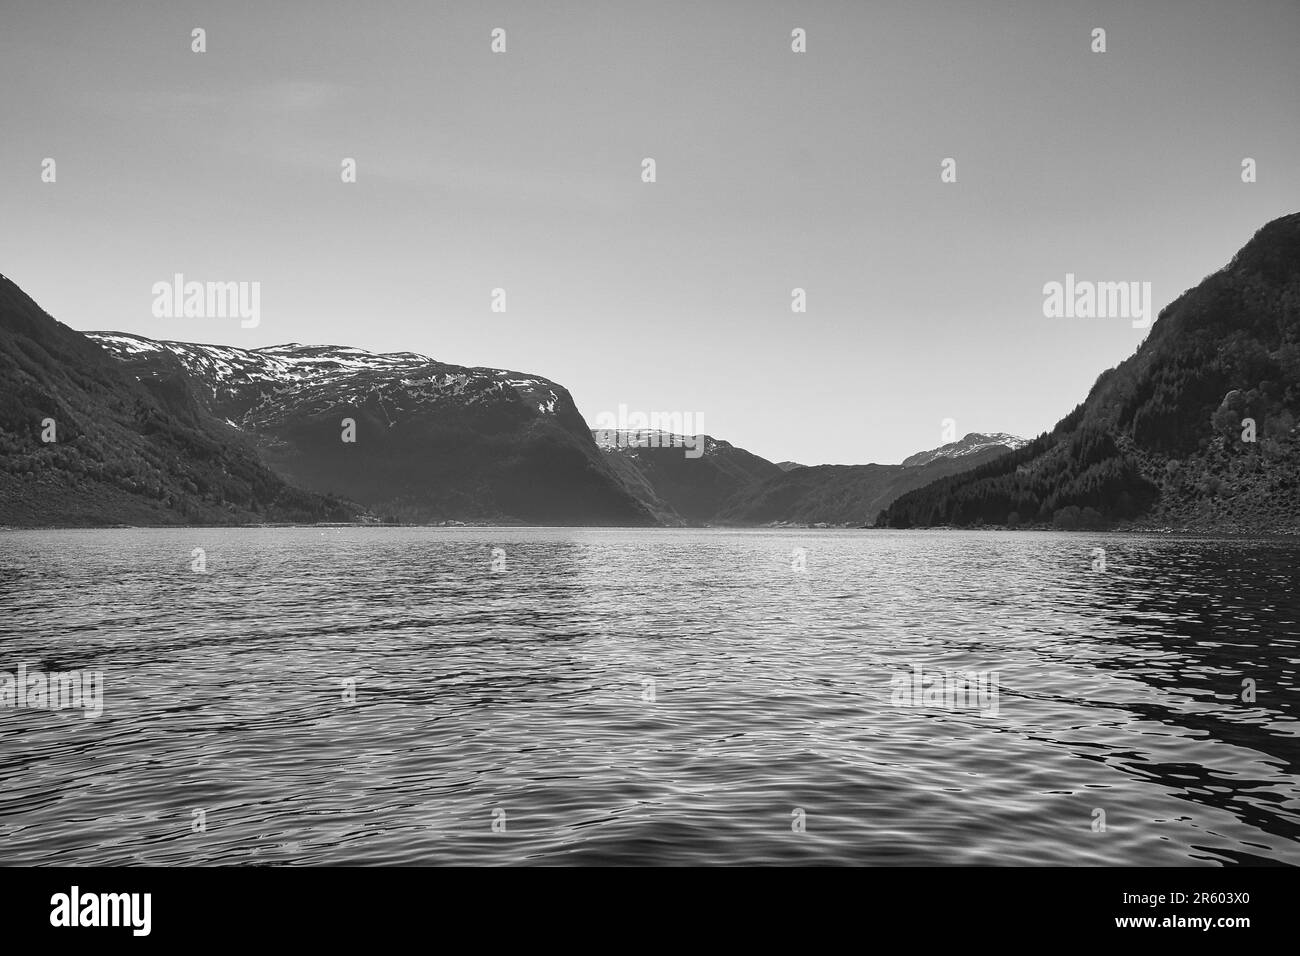 Fiordo con vista delle montagne e del paesaggio fiordo in Norvegia in bianco e nero. Paesaggio girato con sole dal nord della Scandinavia Foto Stock